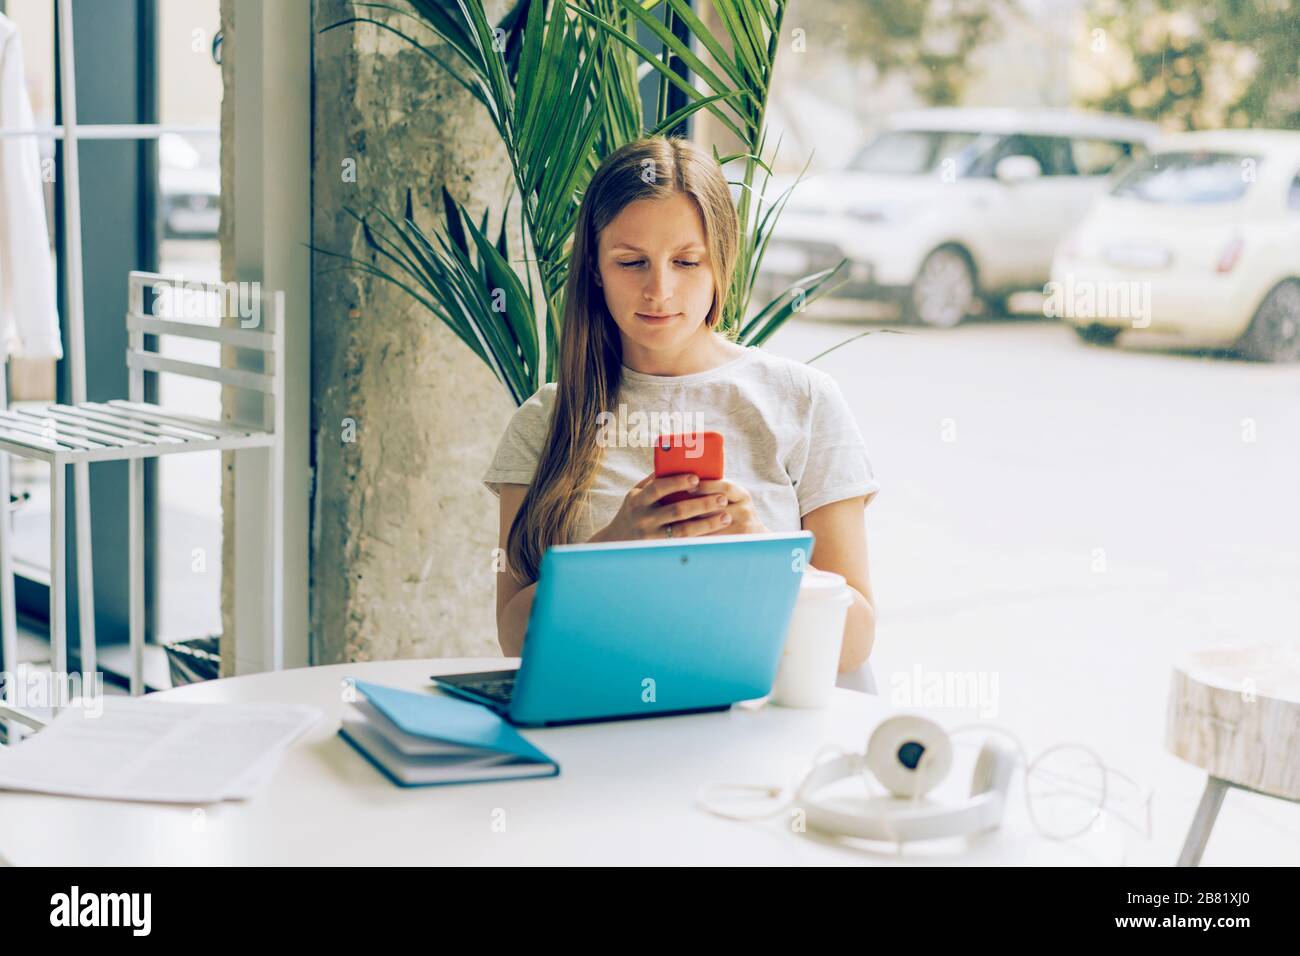 Eine junge weibliche Person durchstöbere am Telefon und am Laptop am frühen Morgen soziale Nachrichten. Stockfoto